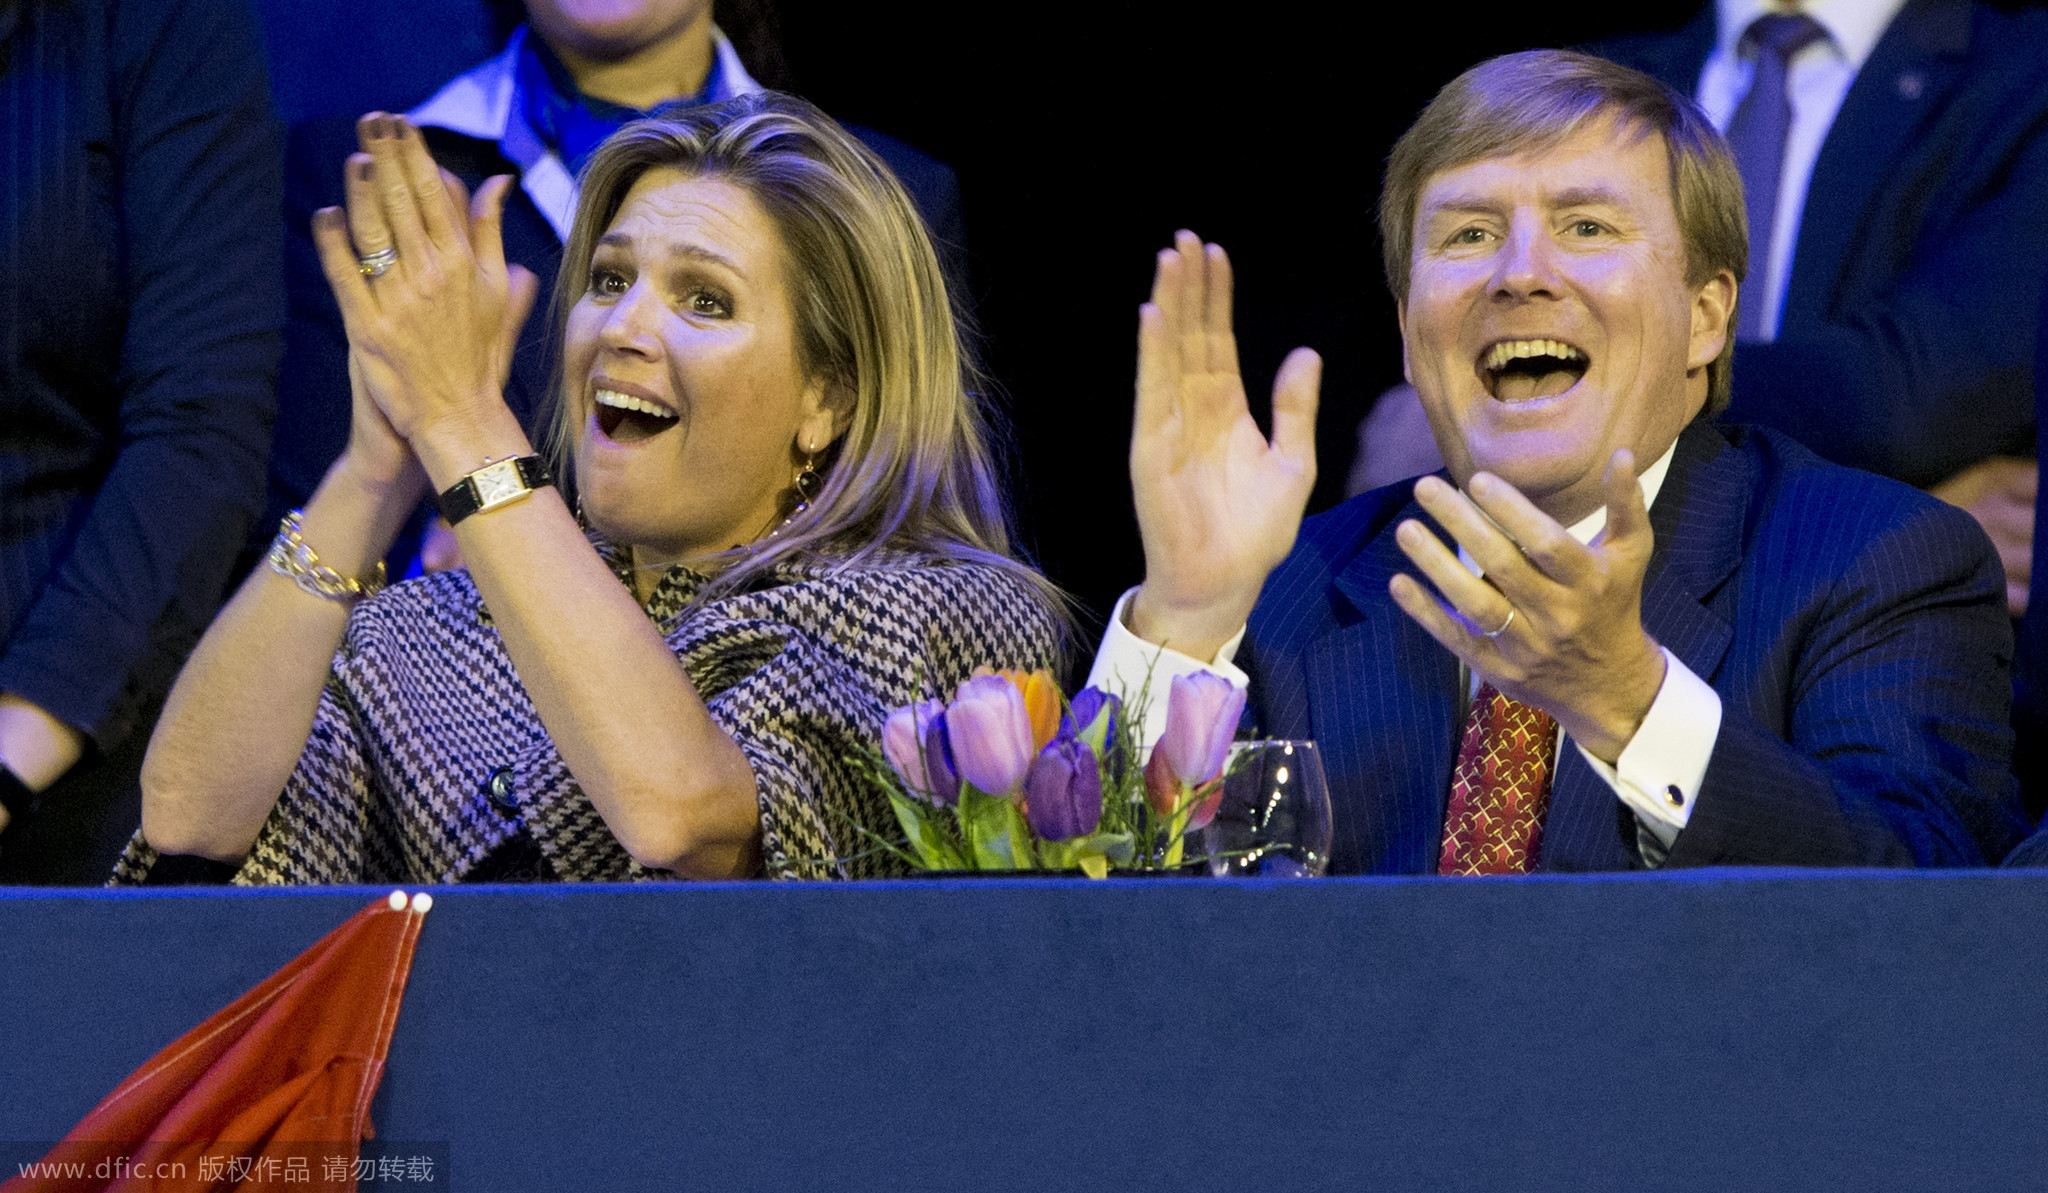 荷兰国王夫妇表情神同步 幸福情景令人艳羡